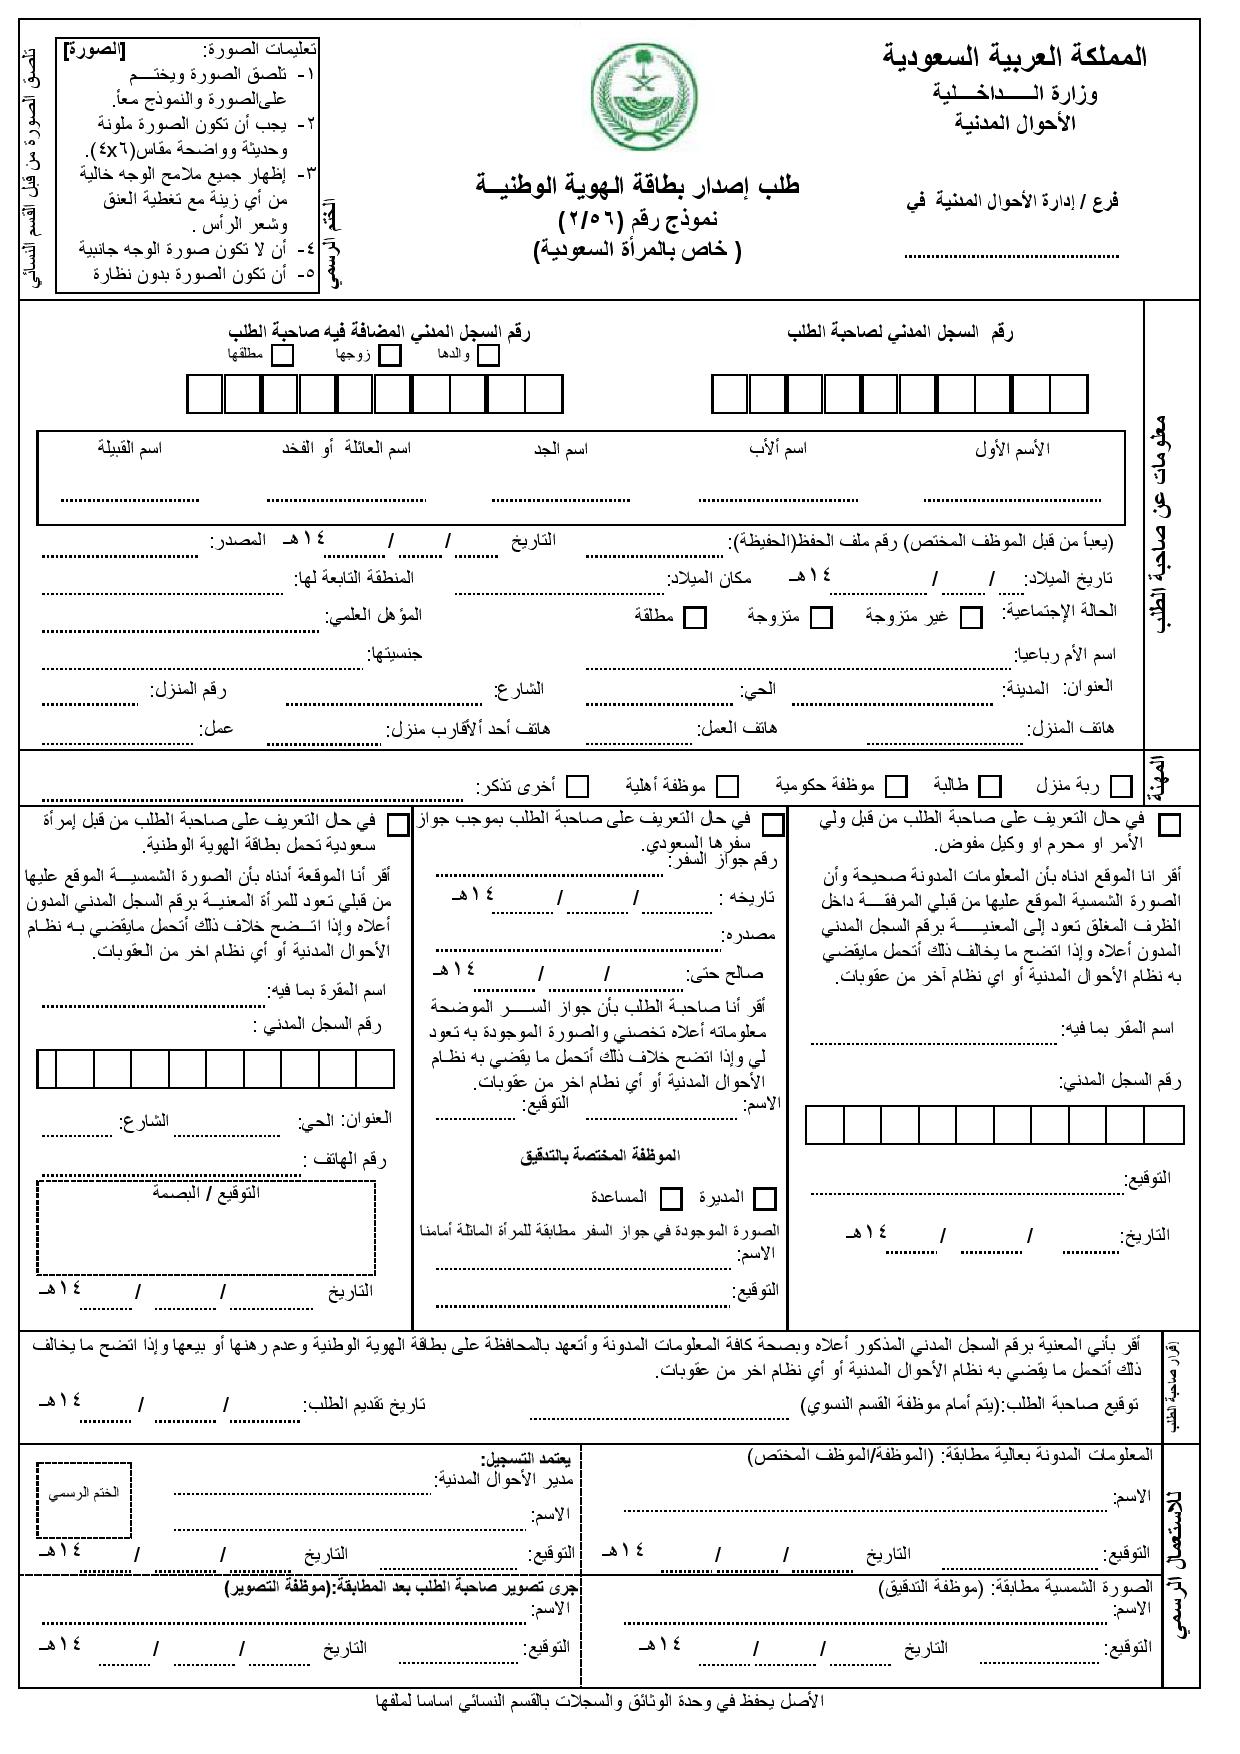 طريقة اصدار بطاقة احوال للنساء وحجز موعد بالاحوال المدنية من ابشر موسوعة الازاهير